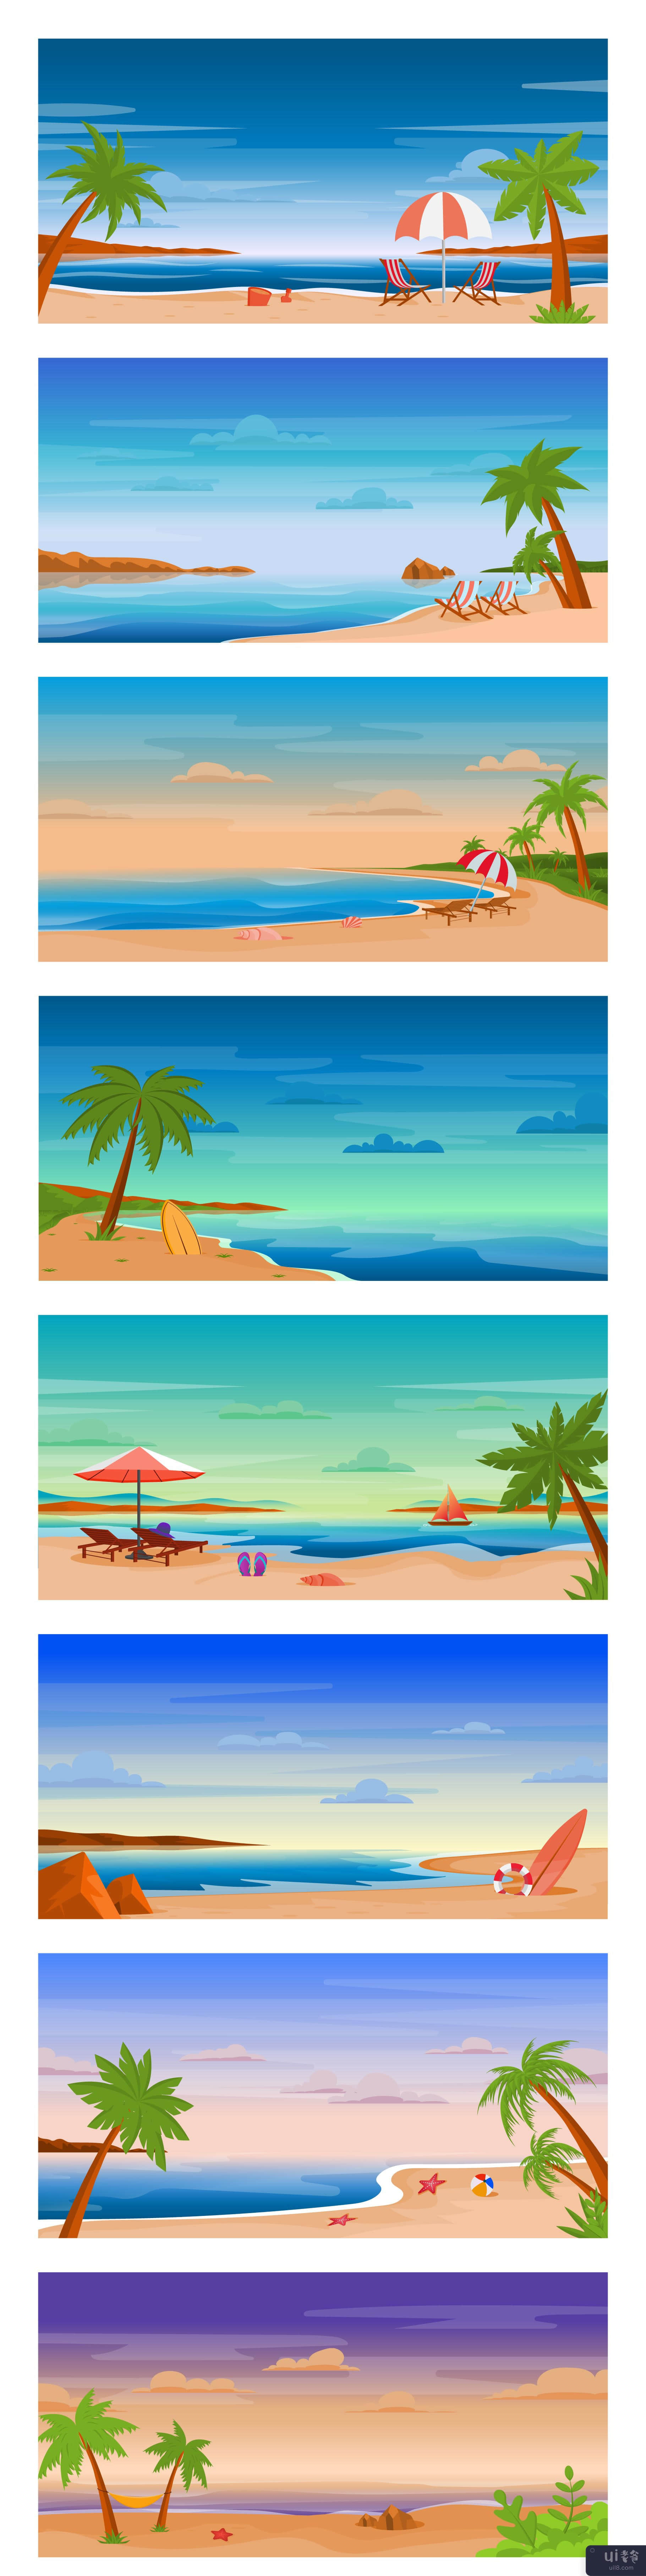 25个大海和海滩背景(25 Sea and Beach Backgrounds)插图